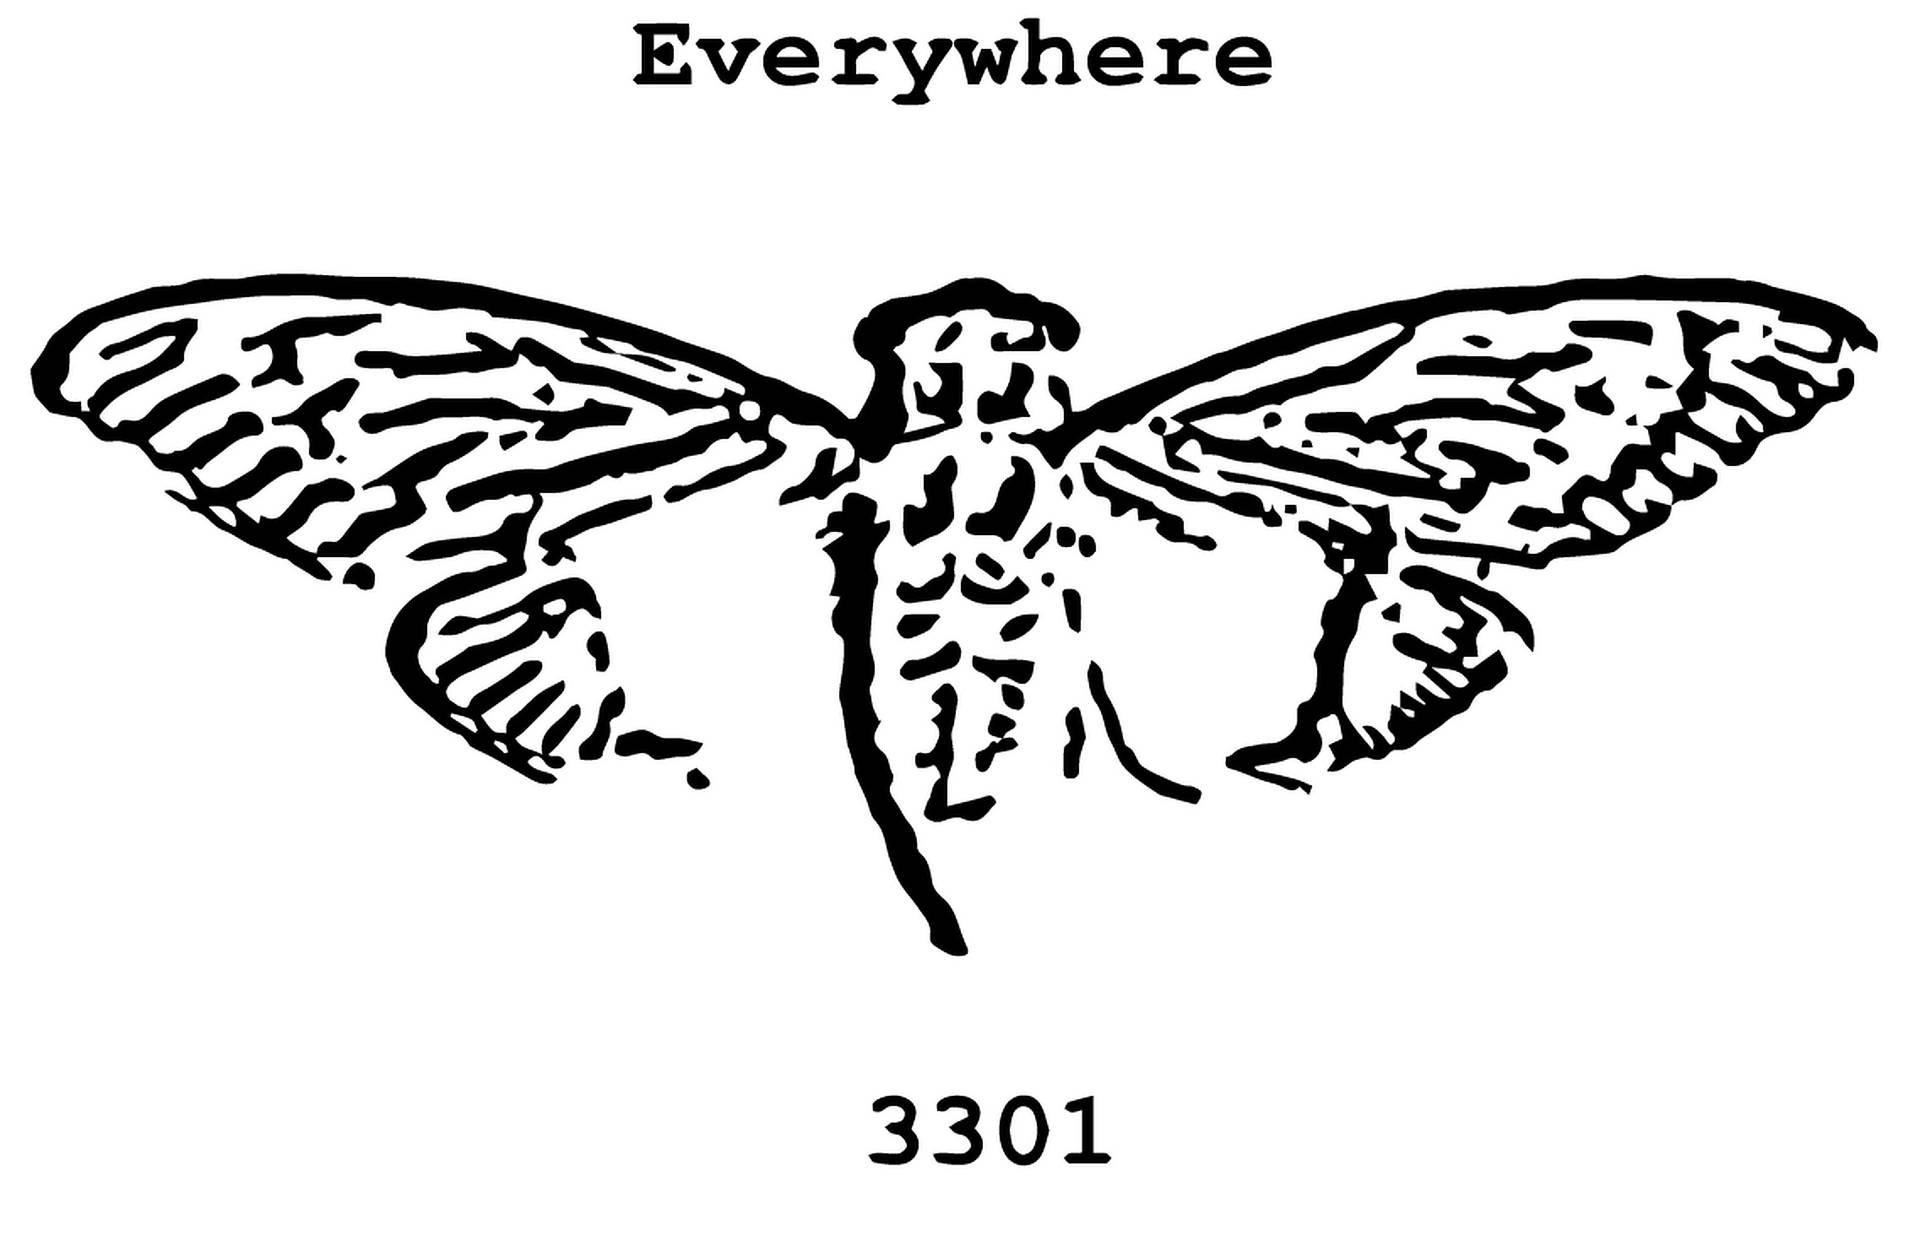 cicada 3301 wallpaper